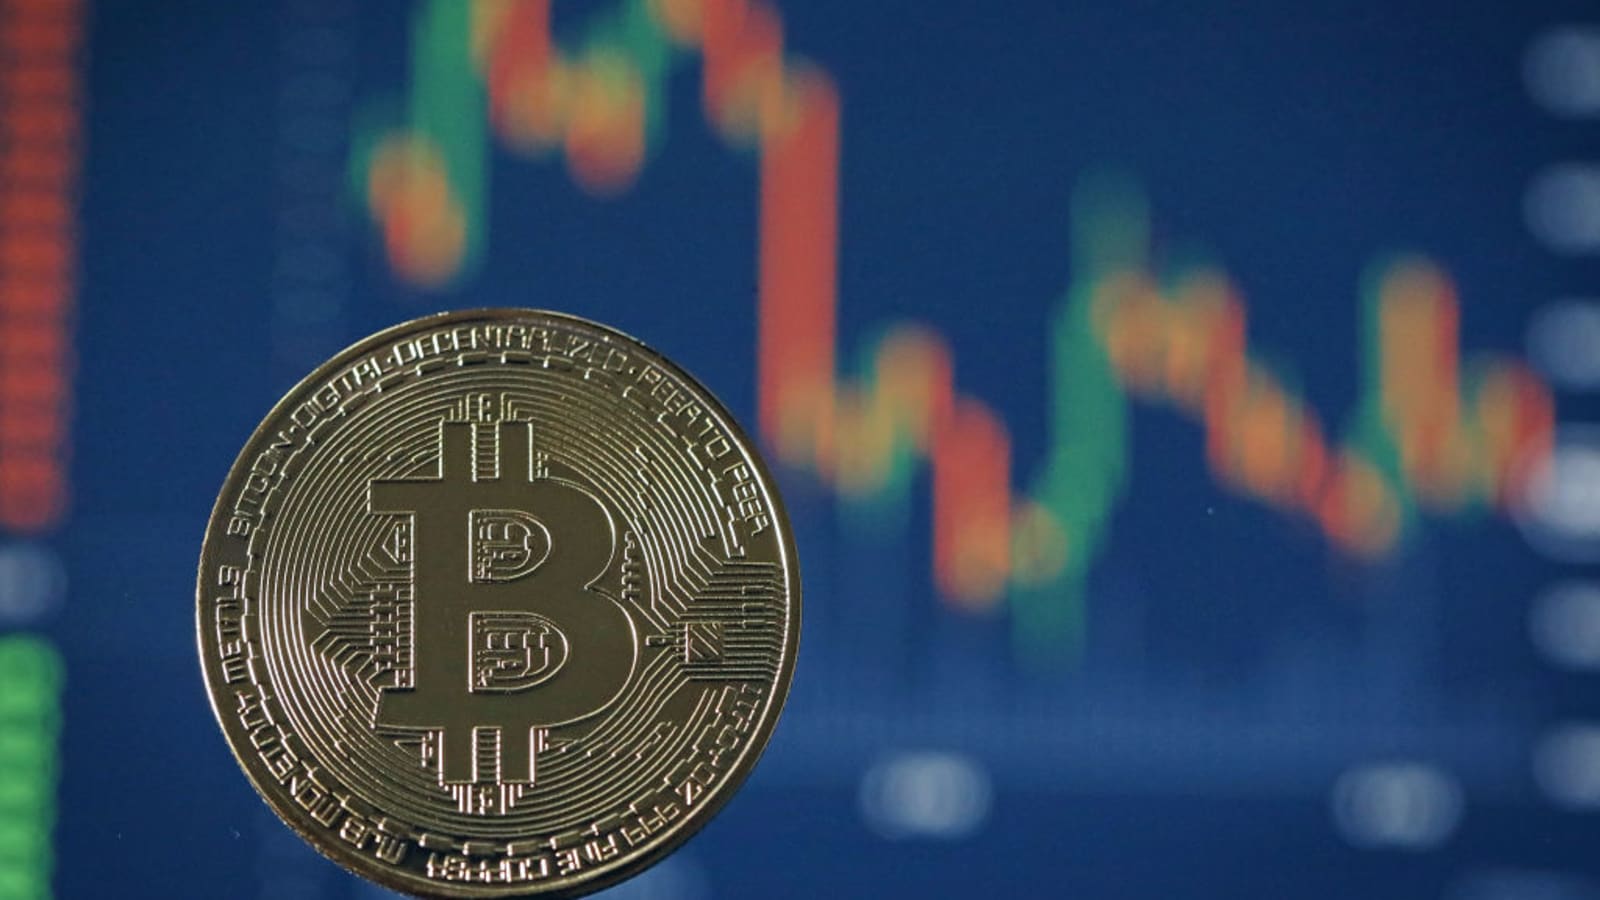 dél-korea ban bitcoin trading